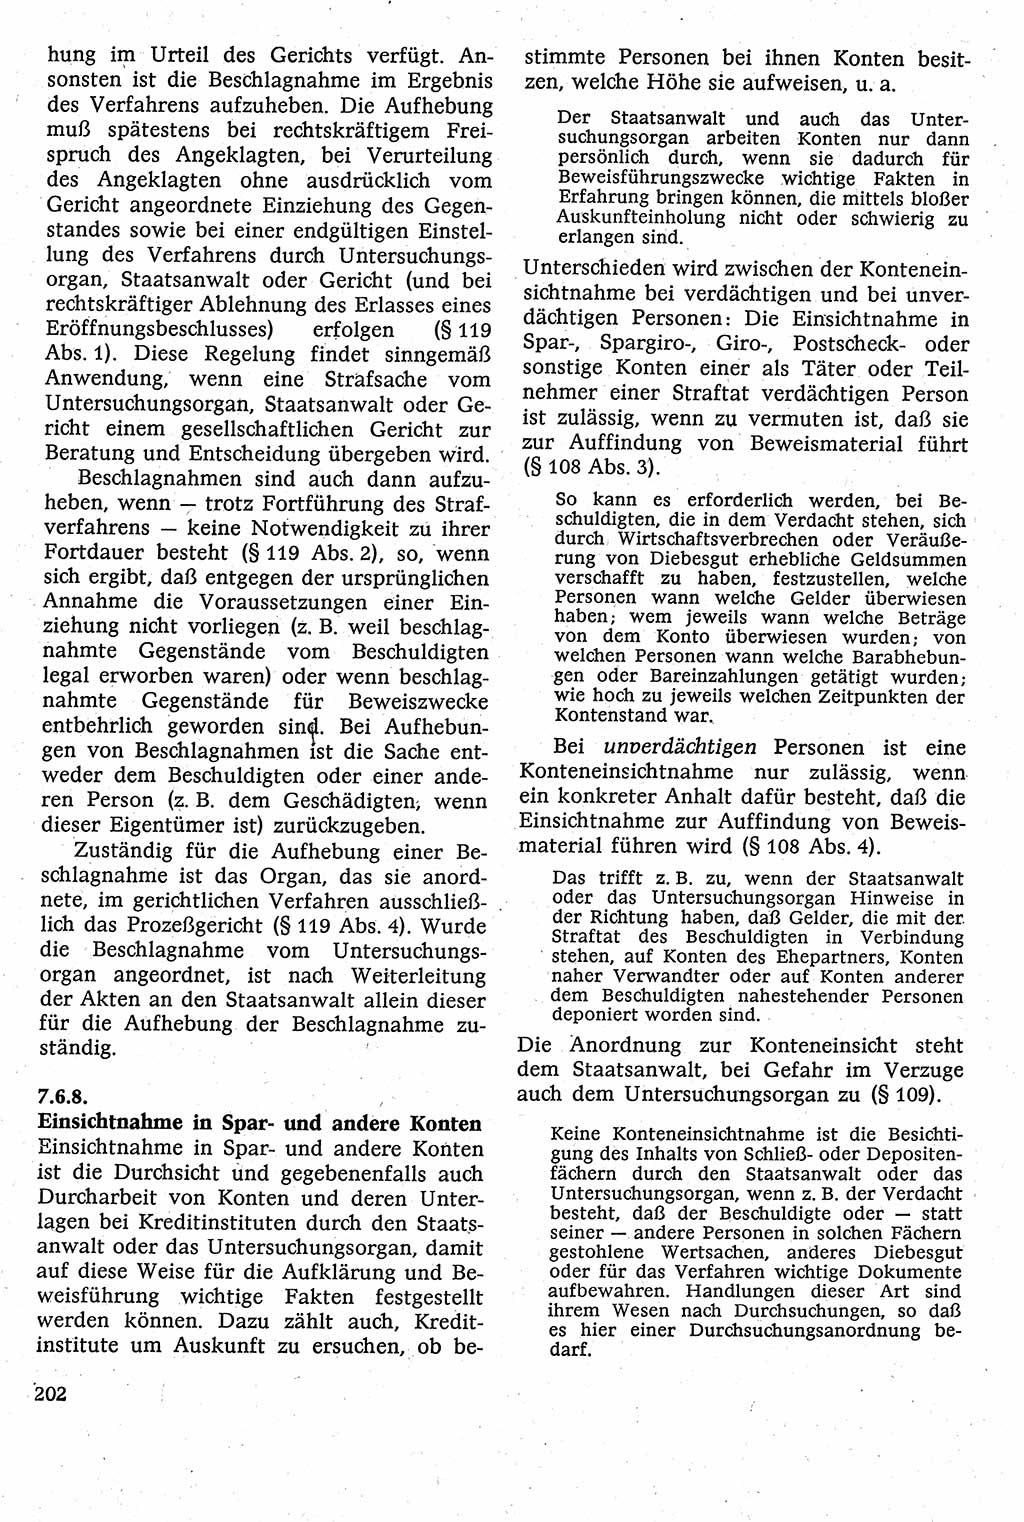 Strafverfahrensrecht [Deutsche Demokratische Republik (DDR)], Lehrbuch 1982, Seite 202 (Strafverf.-R. DDR Lb. 1982, S. 202)